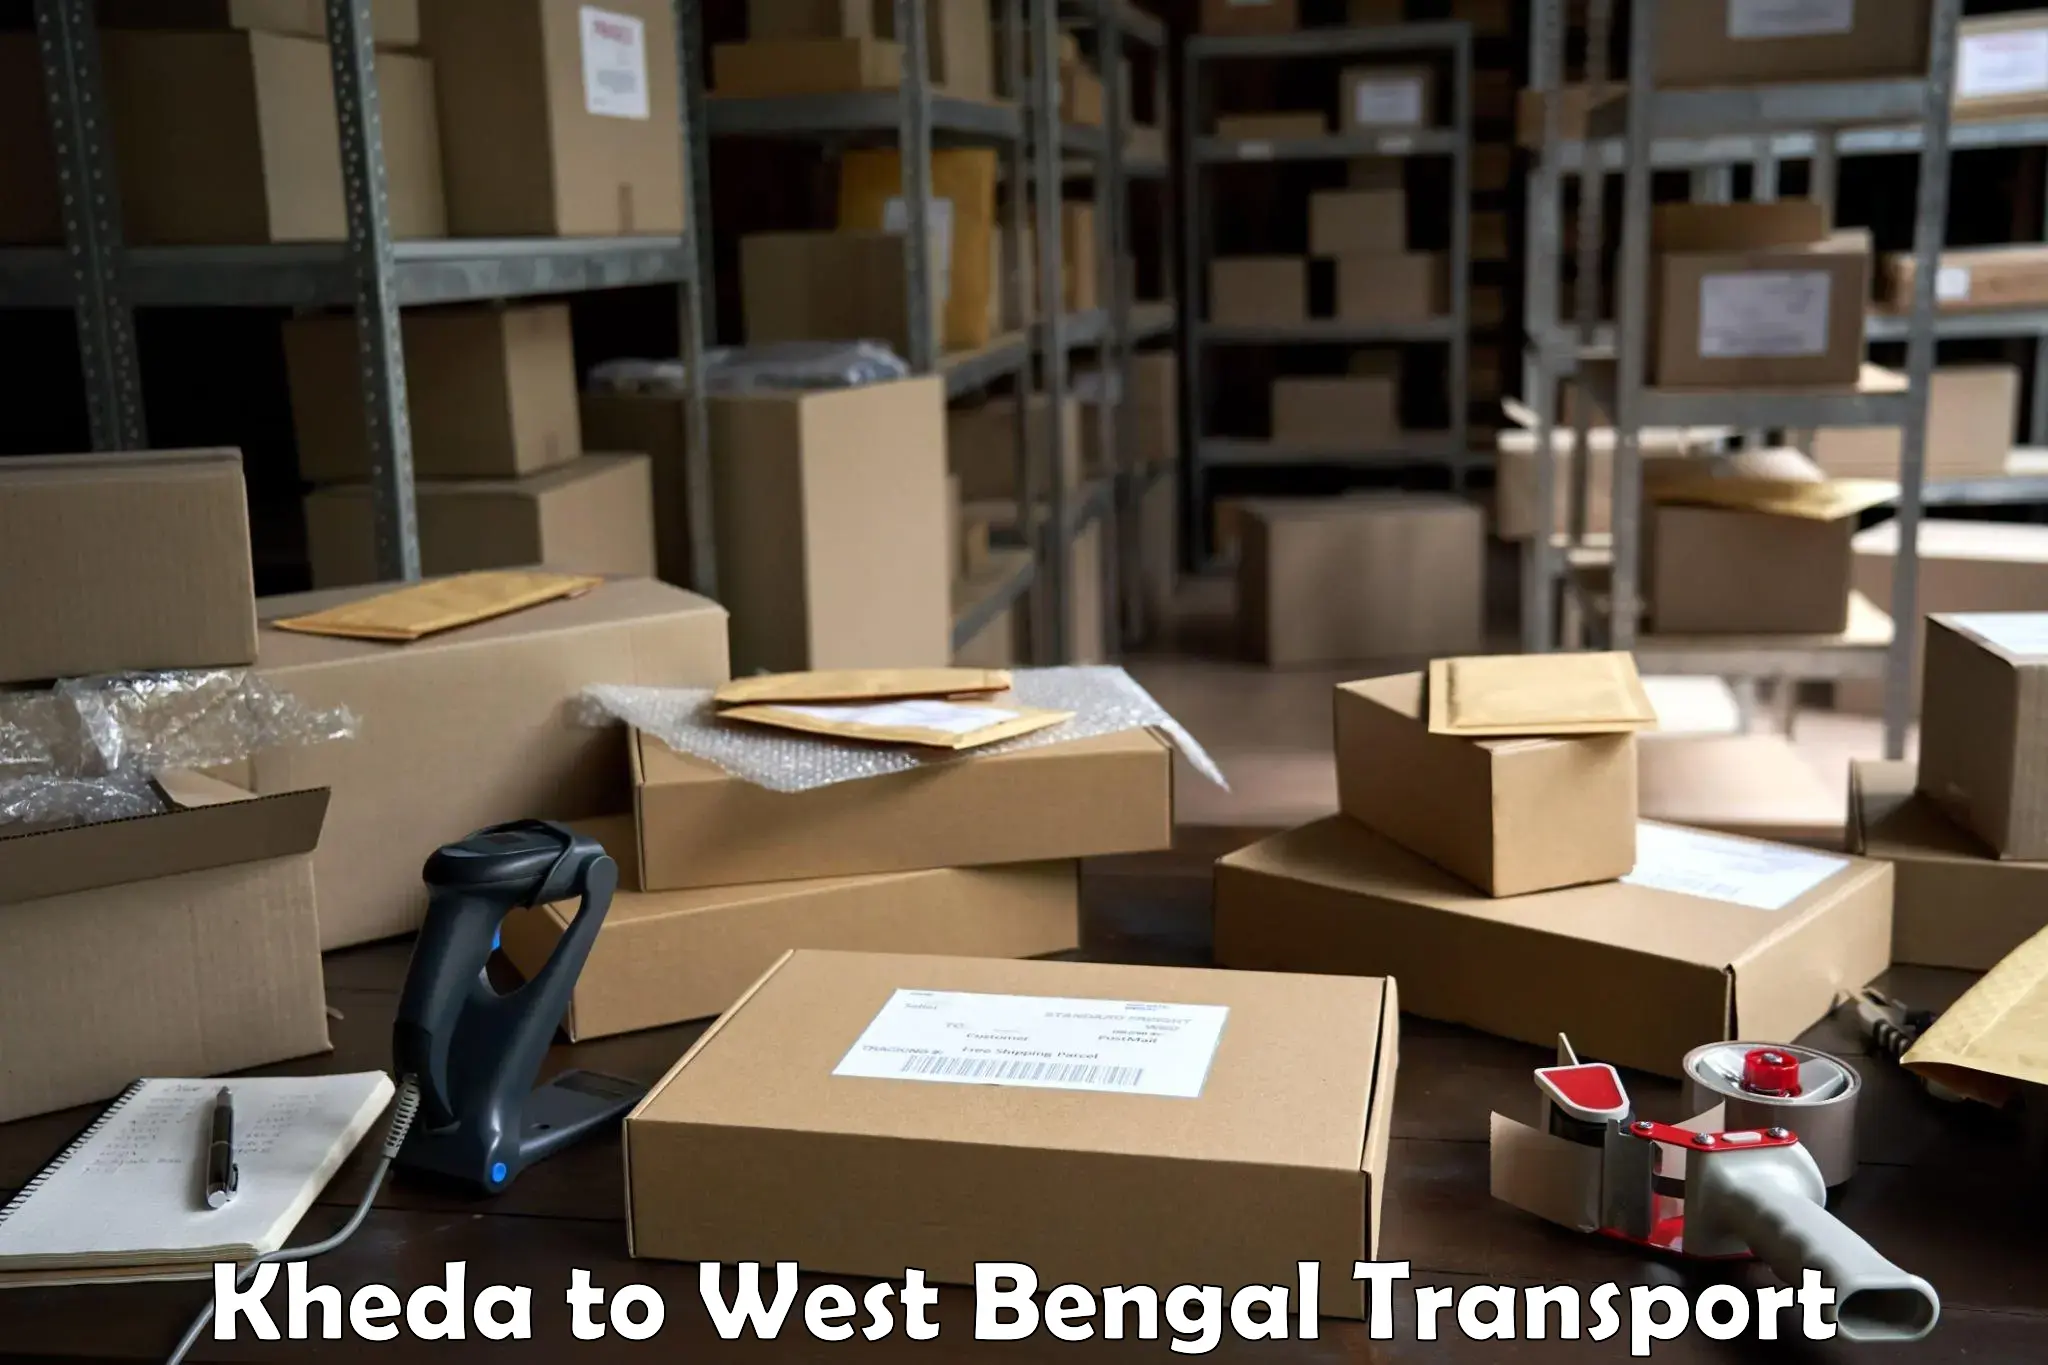 Furniture transport service Kheda to Mirzapur Bardhaman